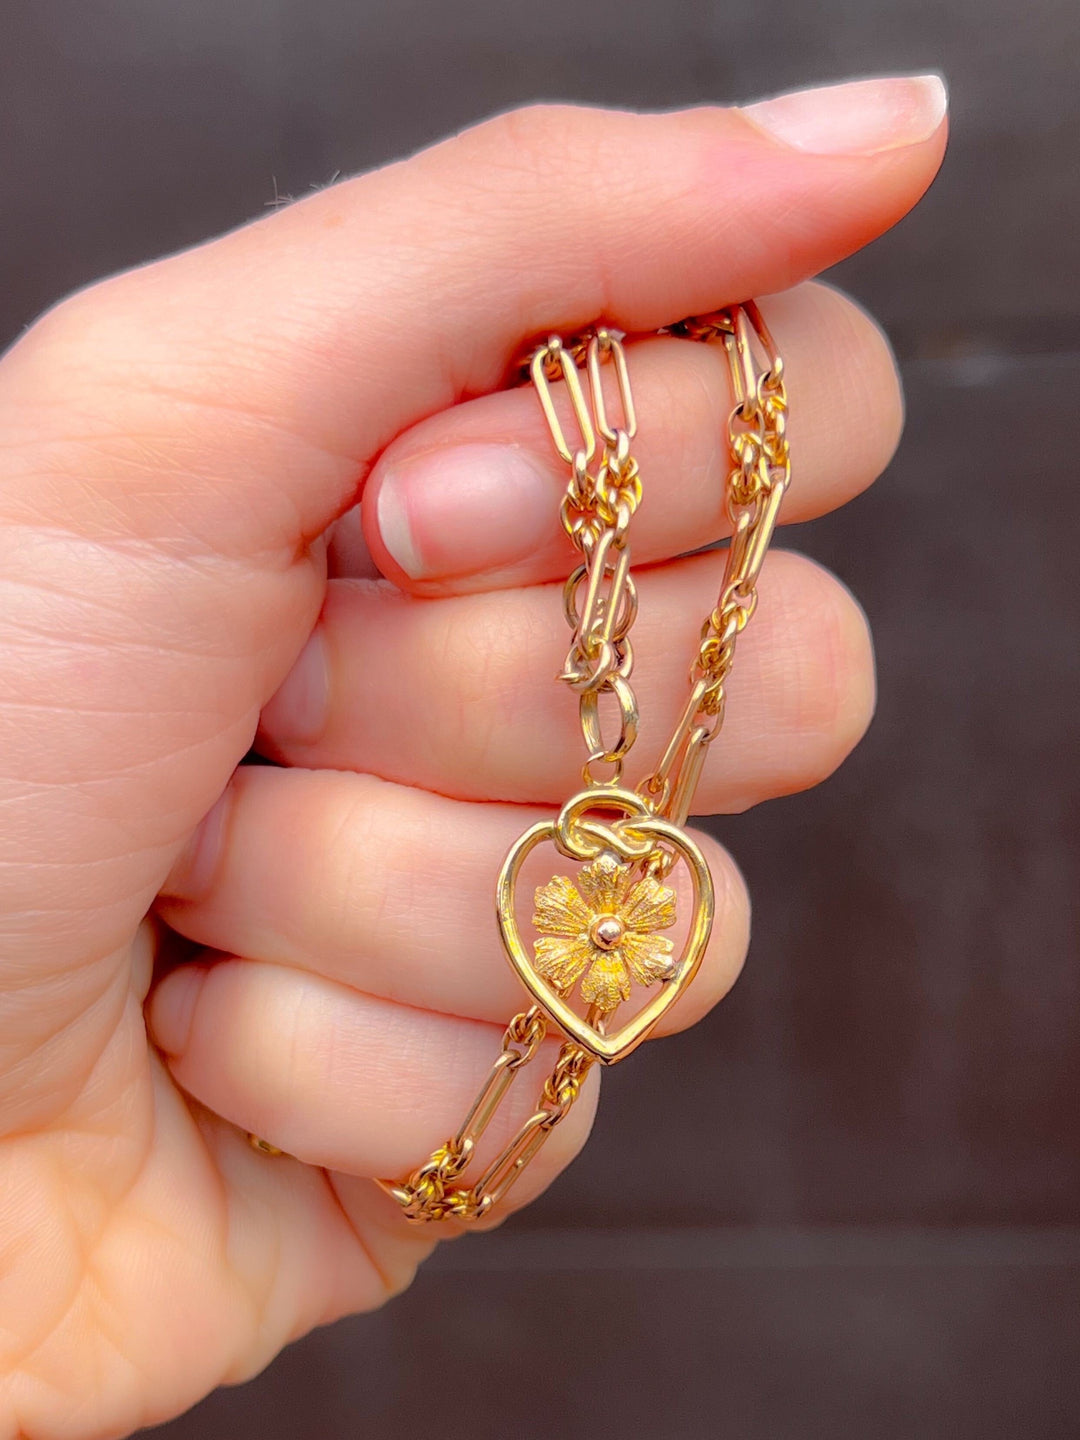 9k Art Nouveau Heart with Love Knot